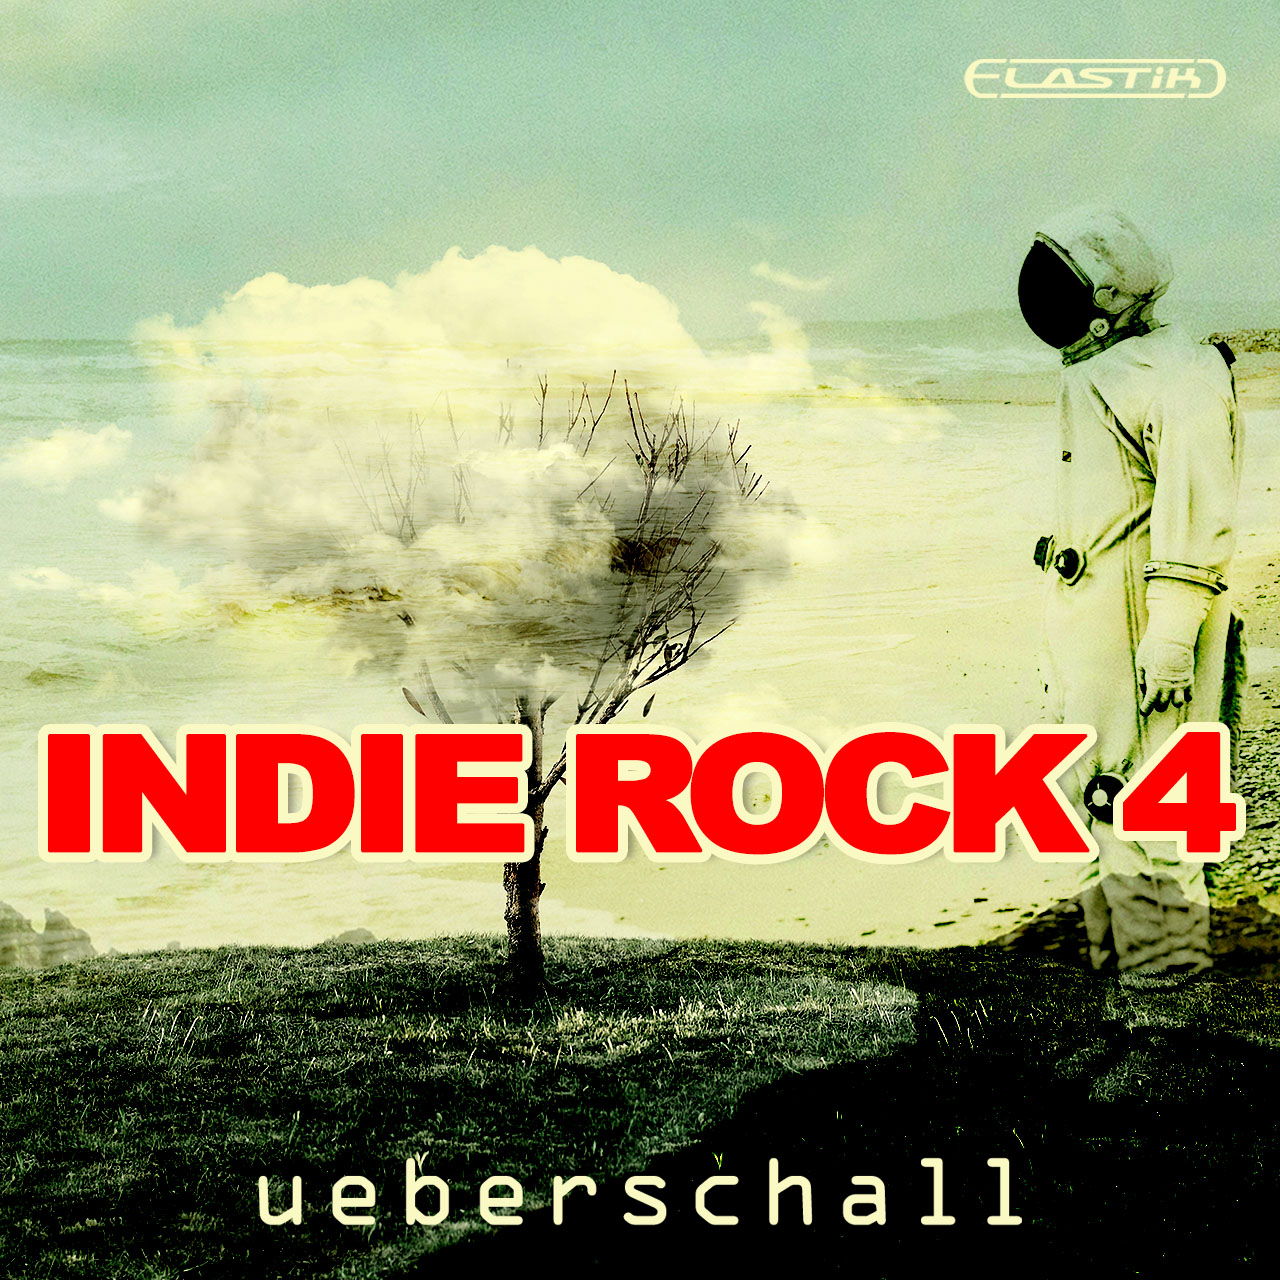 Indie Rock 4 ueberschall 1280x1280 1